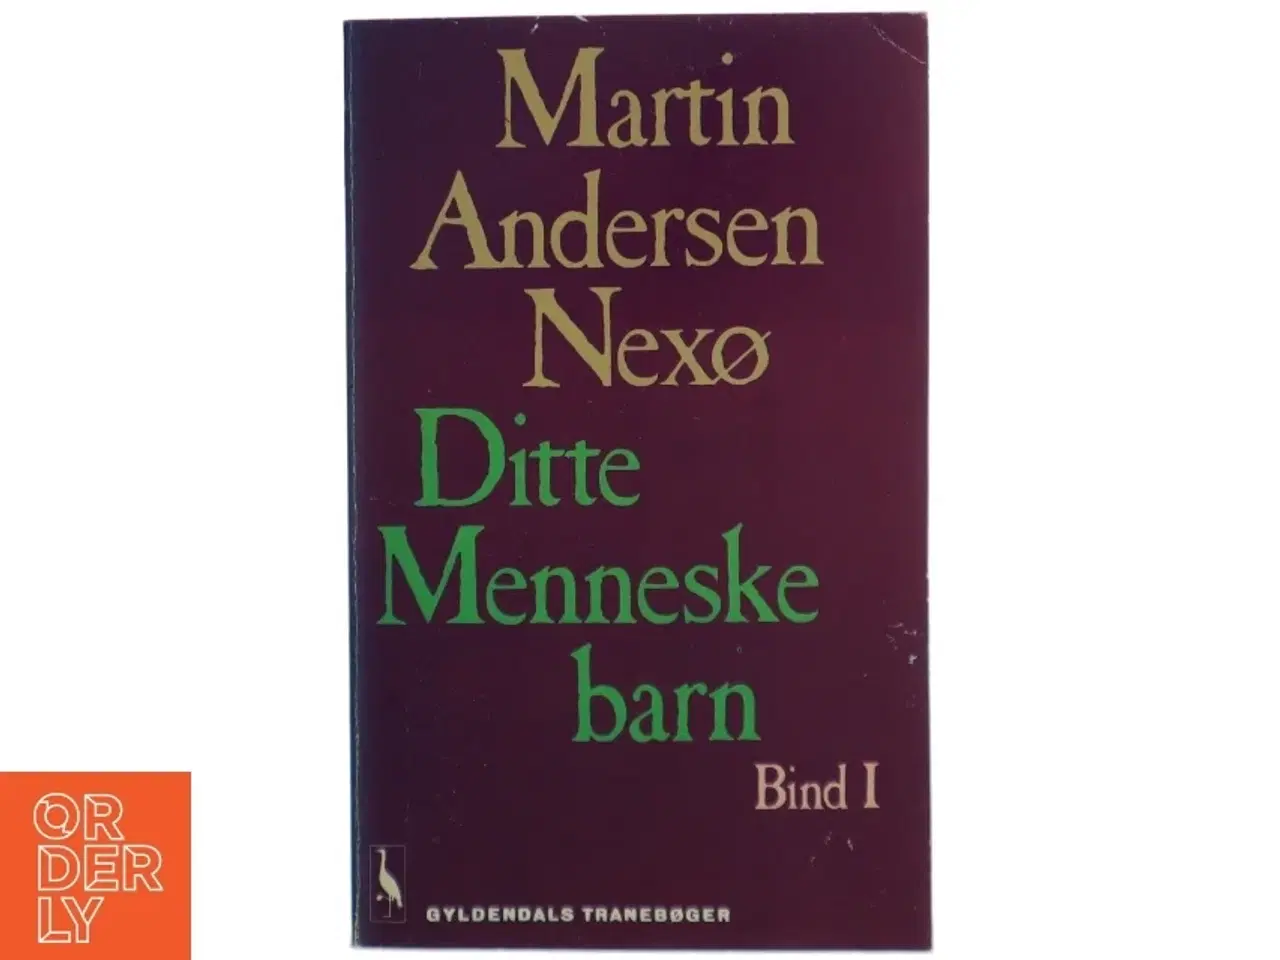 Billede 1 - Ditte Menneskebarn Bind I - af Martin Andersen Nexø fra Gyldendals Tranebøger